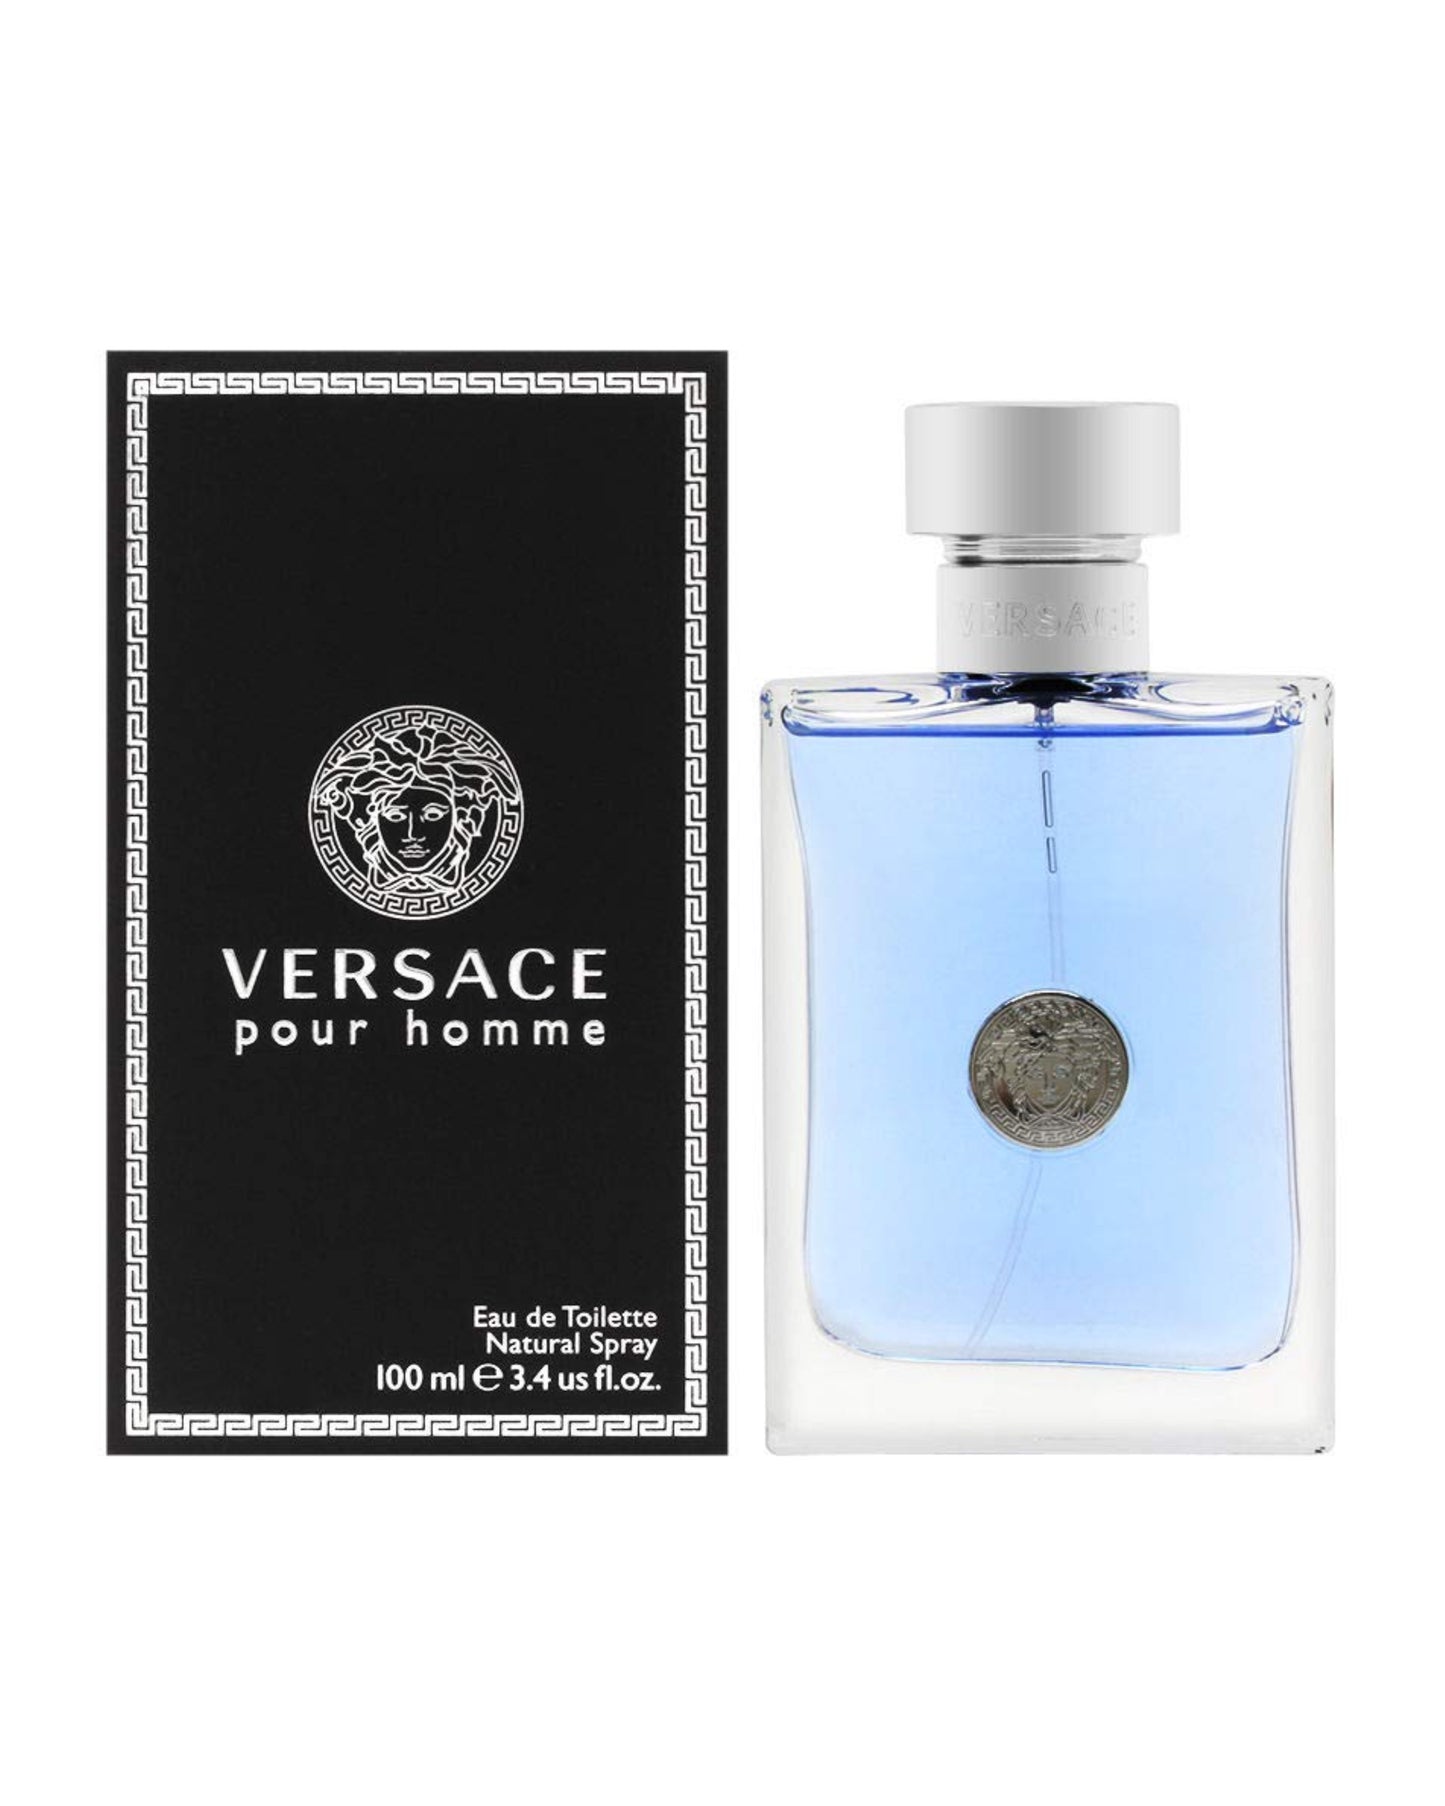 VERSACE - POUR HOMME Eau De Toiletteforyou-vente de parfum original au Maroc-parfum original Maroc-prix maroc-foryou parfum original-authentique-parfum authentique-prix maroc-original-original perfum-perfume